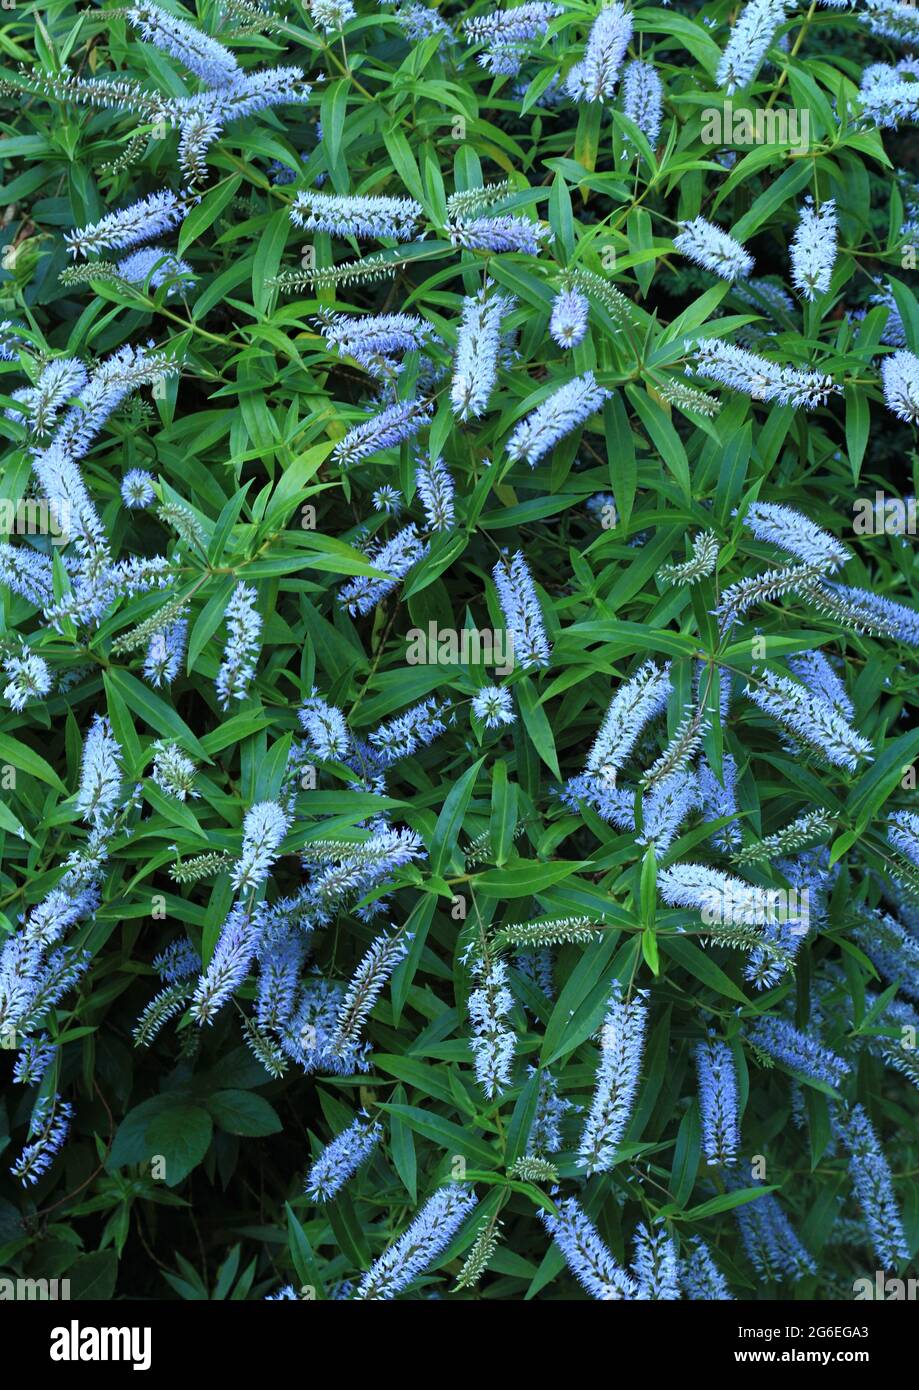 Hebe salicifolia, fleurs bleu pâle, plante de jardin Banque D'Images